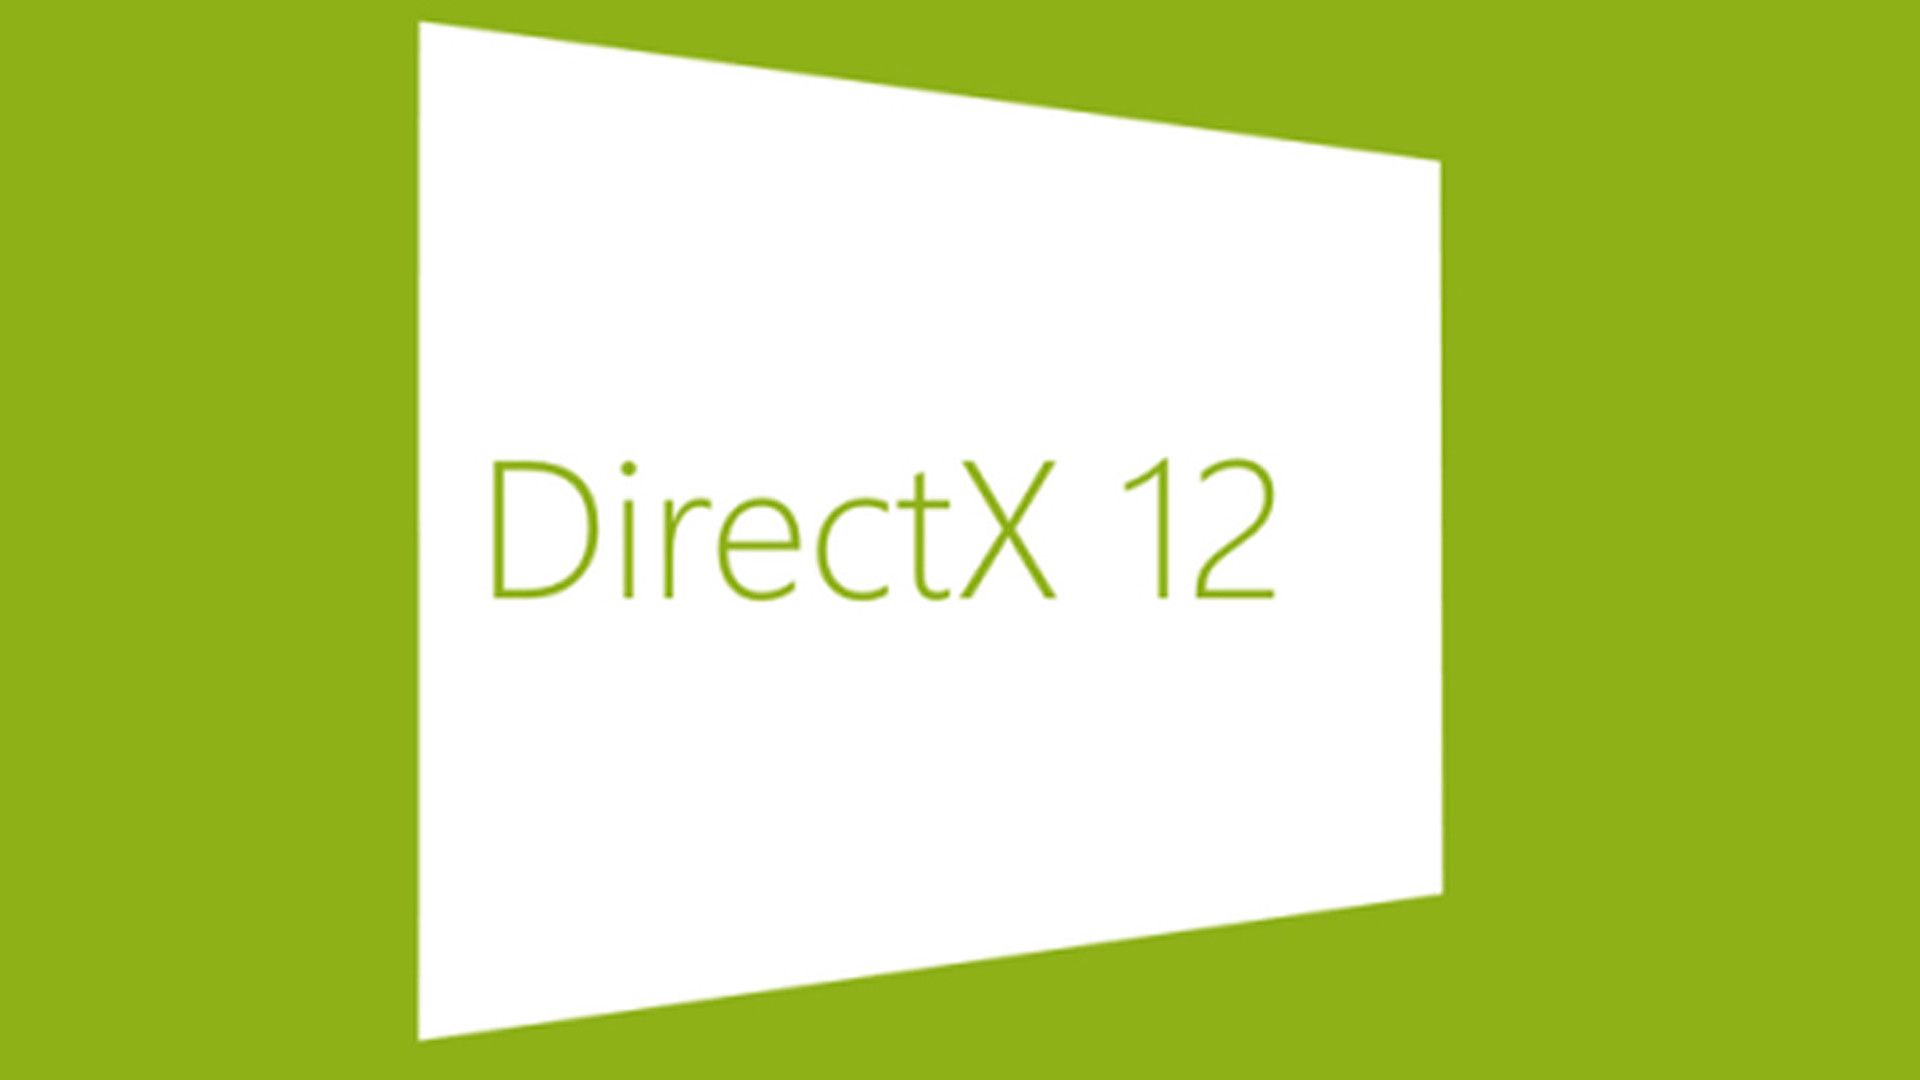 DirectX 12 ¿Qué es y por qué es importante? - MuyComputer